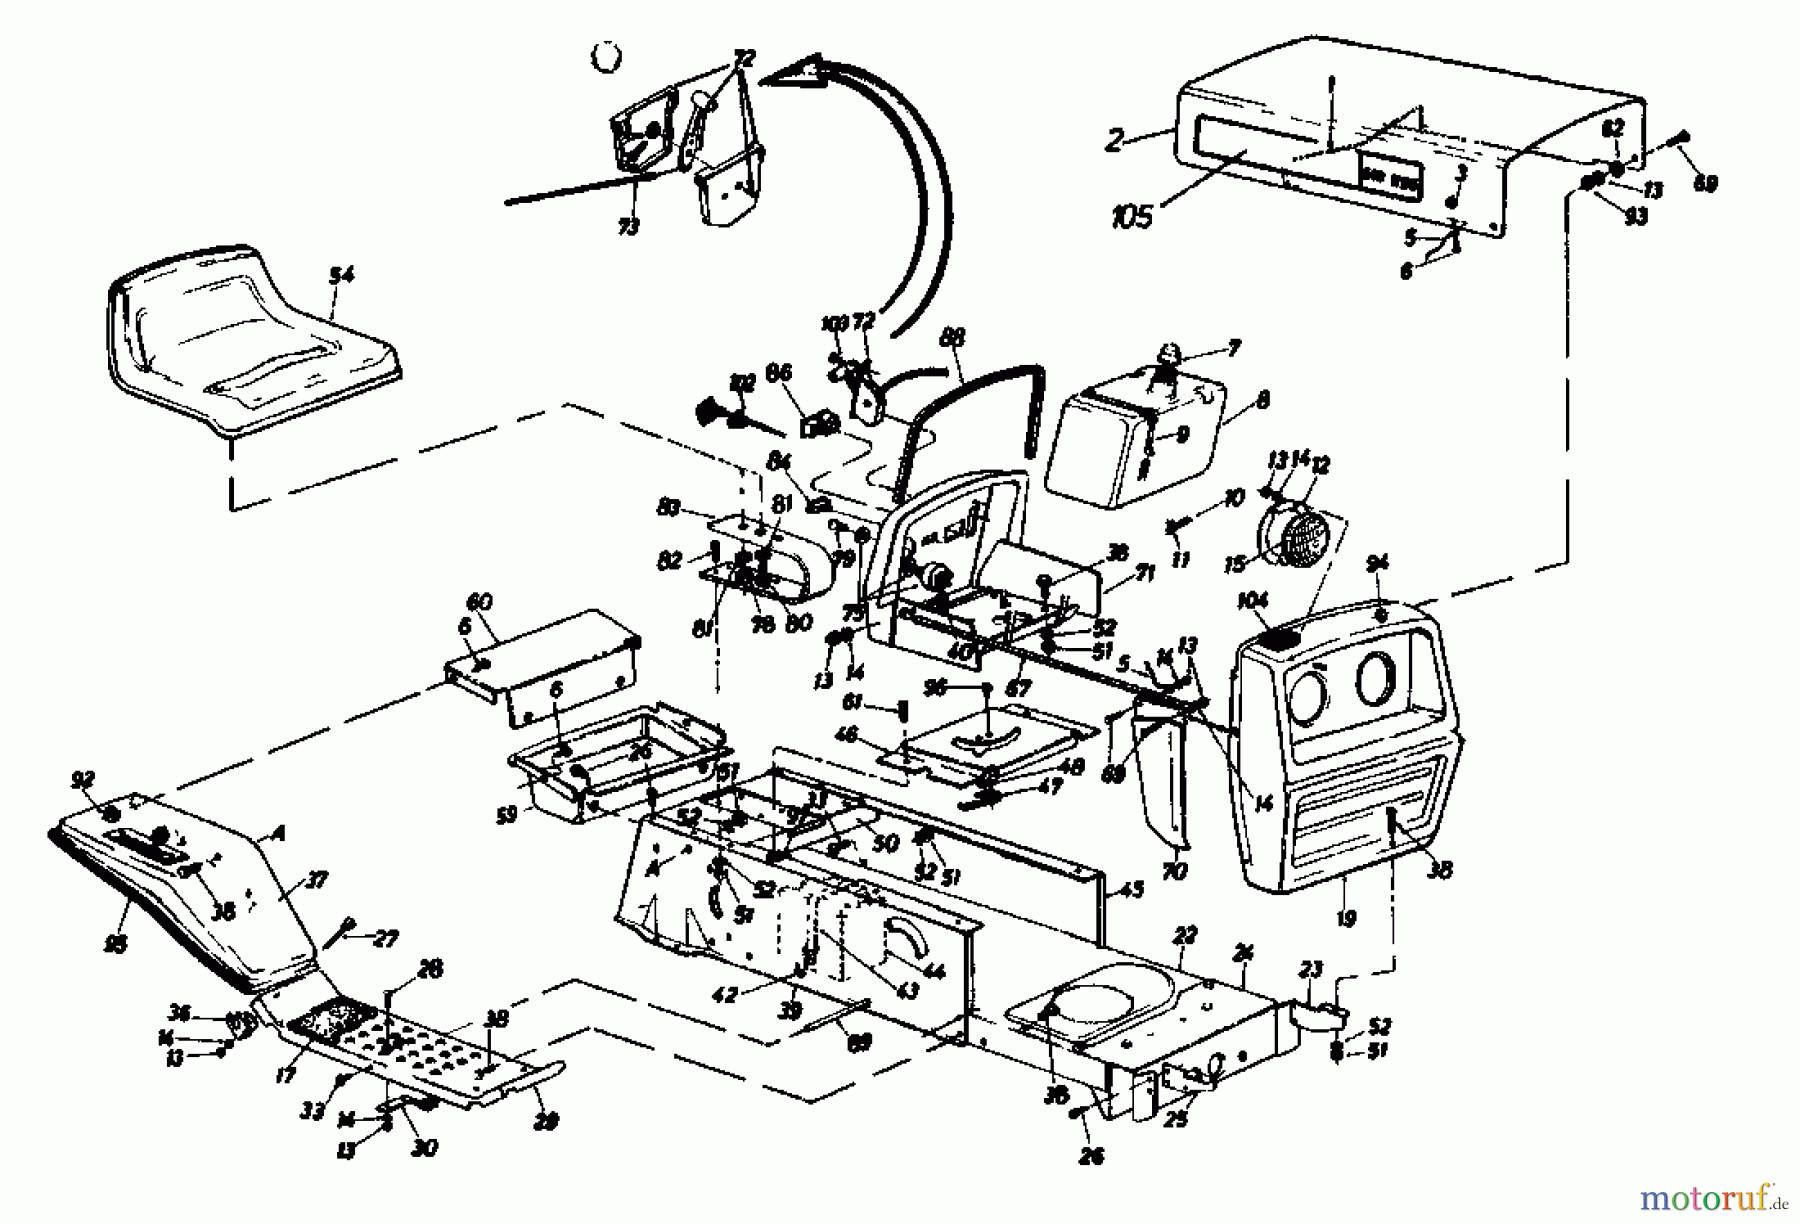  Gutbrod Tracteurs de pelouse 610 EBS 02651.02  (1986) Tableau de bord, Capot de moteur, Jupe